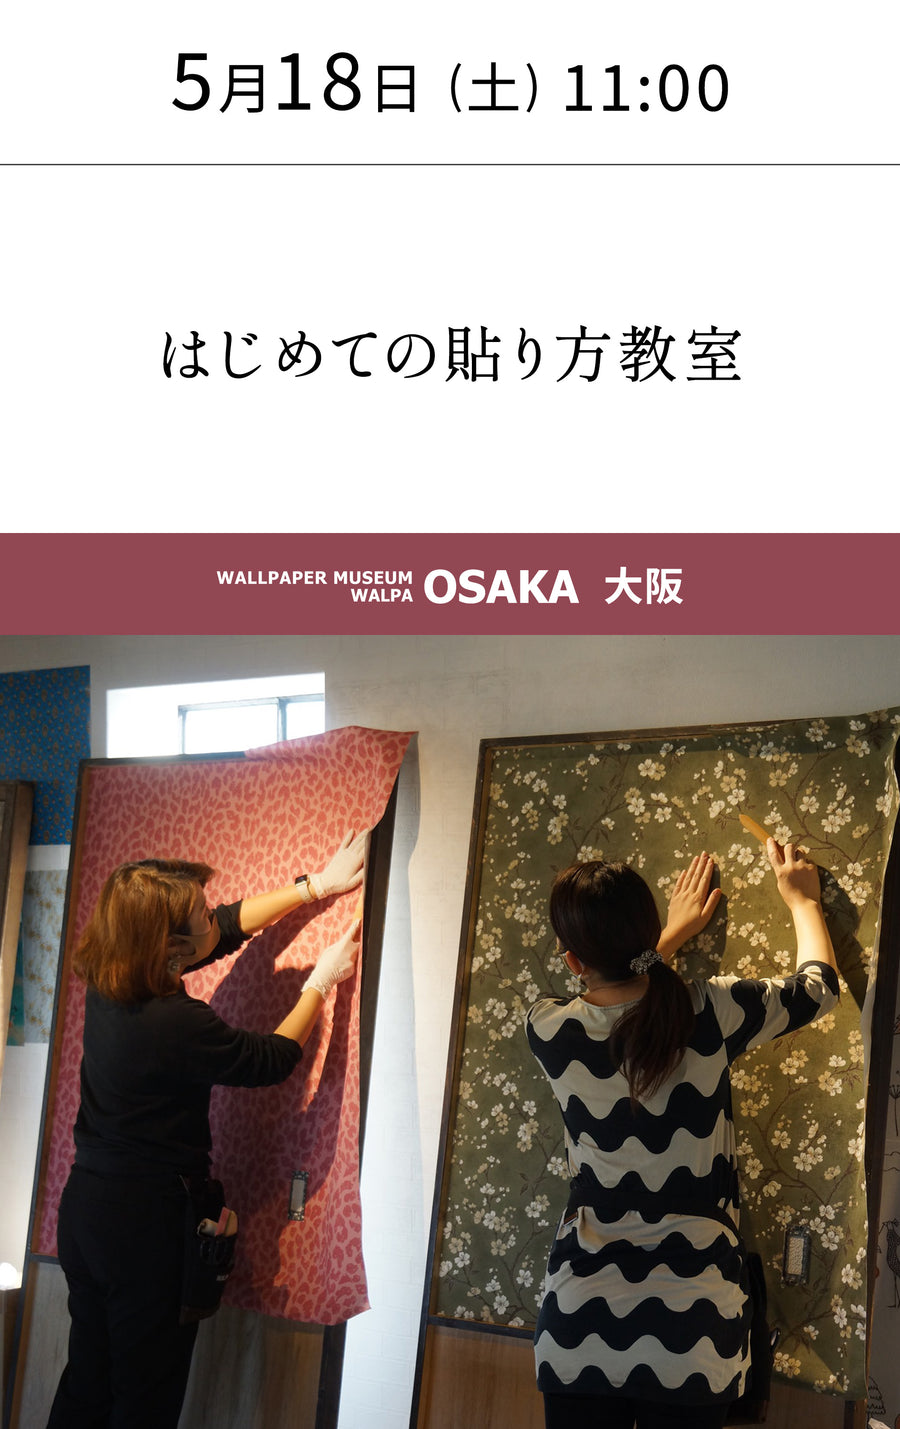 5月18日(土) 11:00～WALLPAPER MUSEUM WALPA / OSAKA ワークショップ 「はじめての貼り方教室」